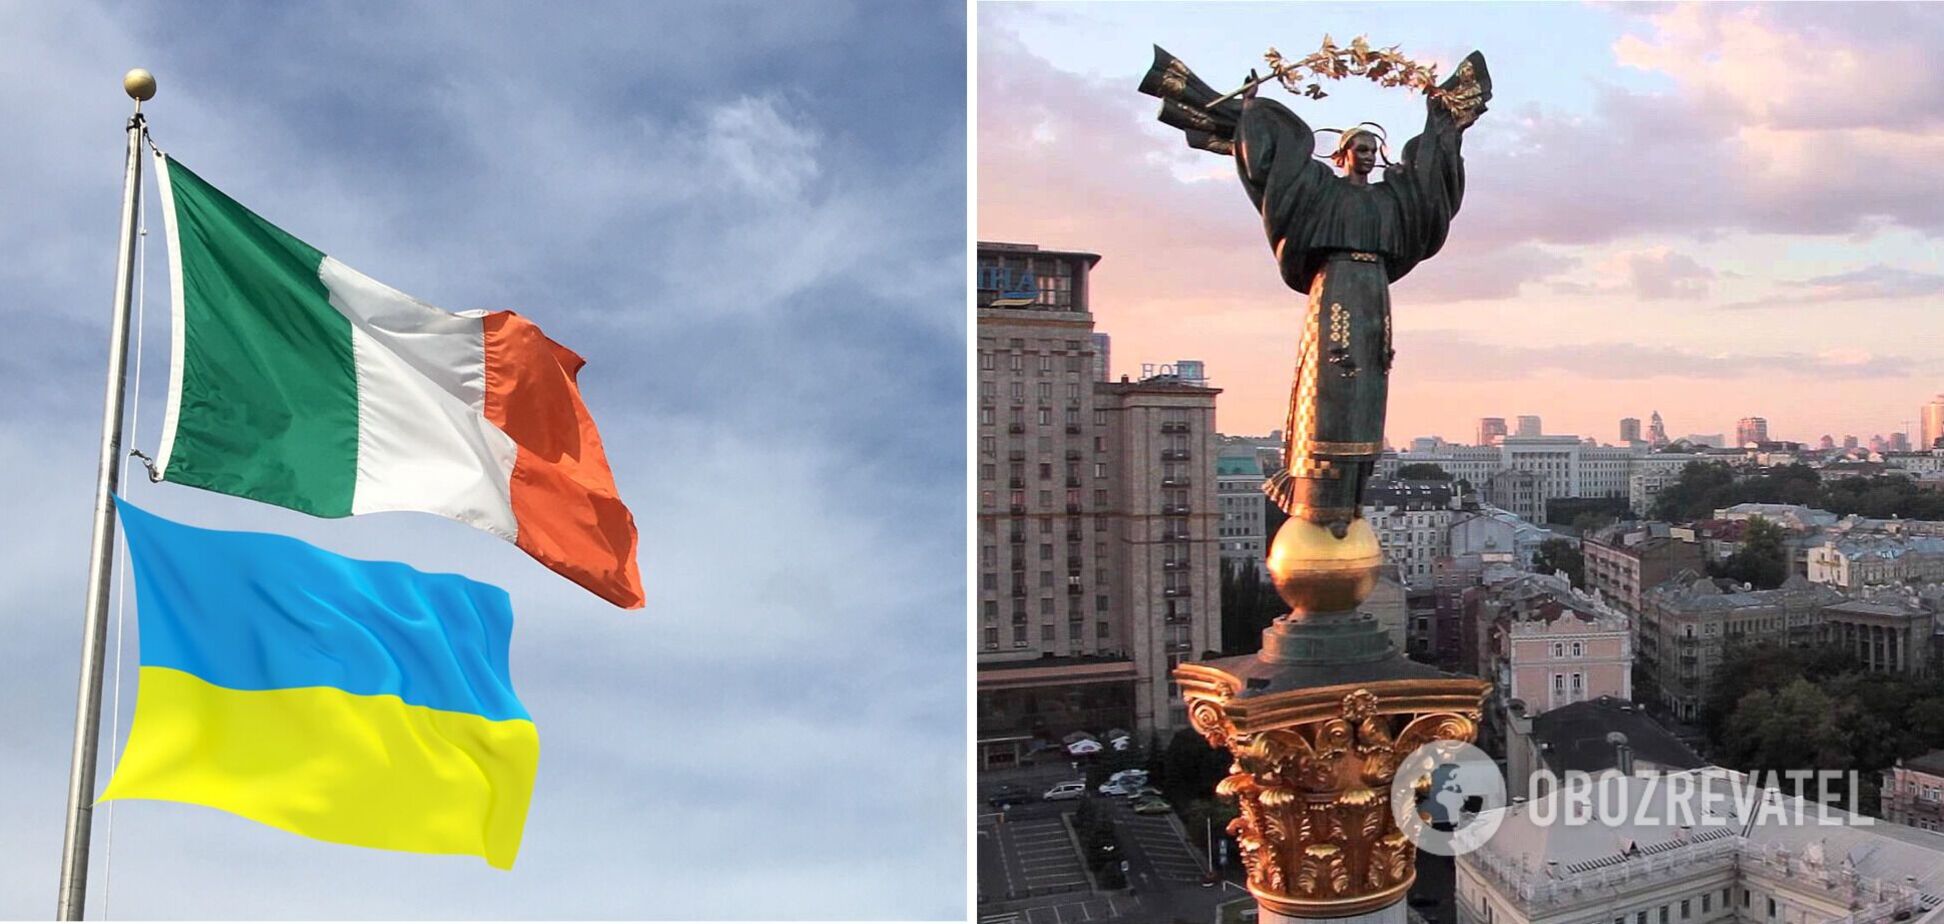 Посольство Ирландии возвращается в Киев после 6 месяцев дистанционной работы